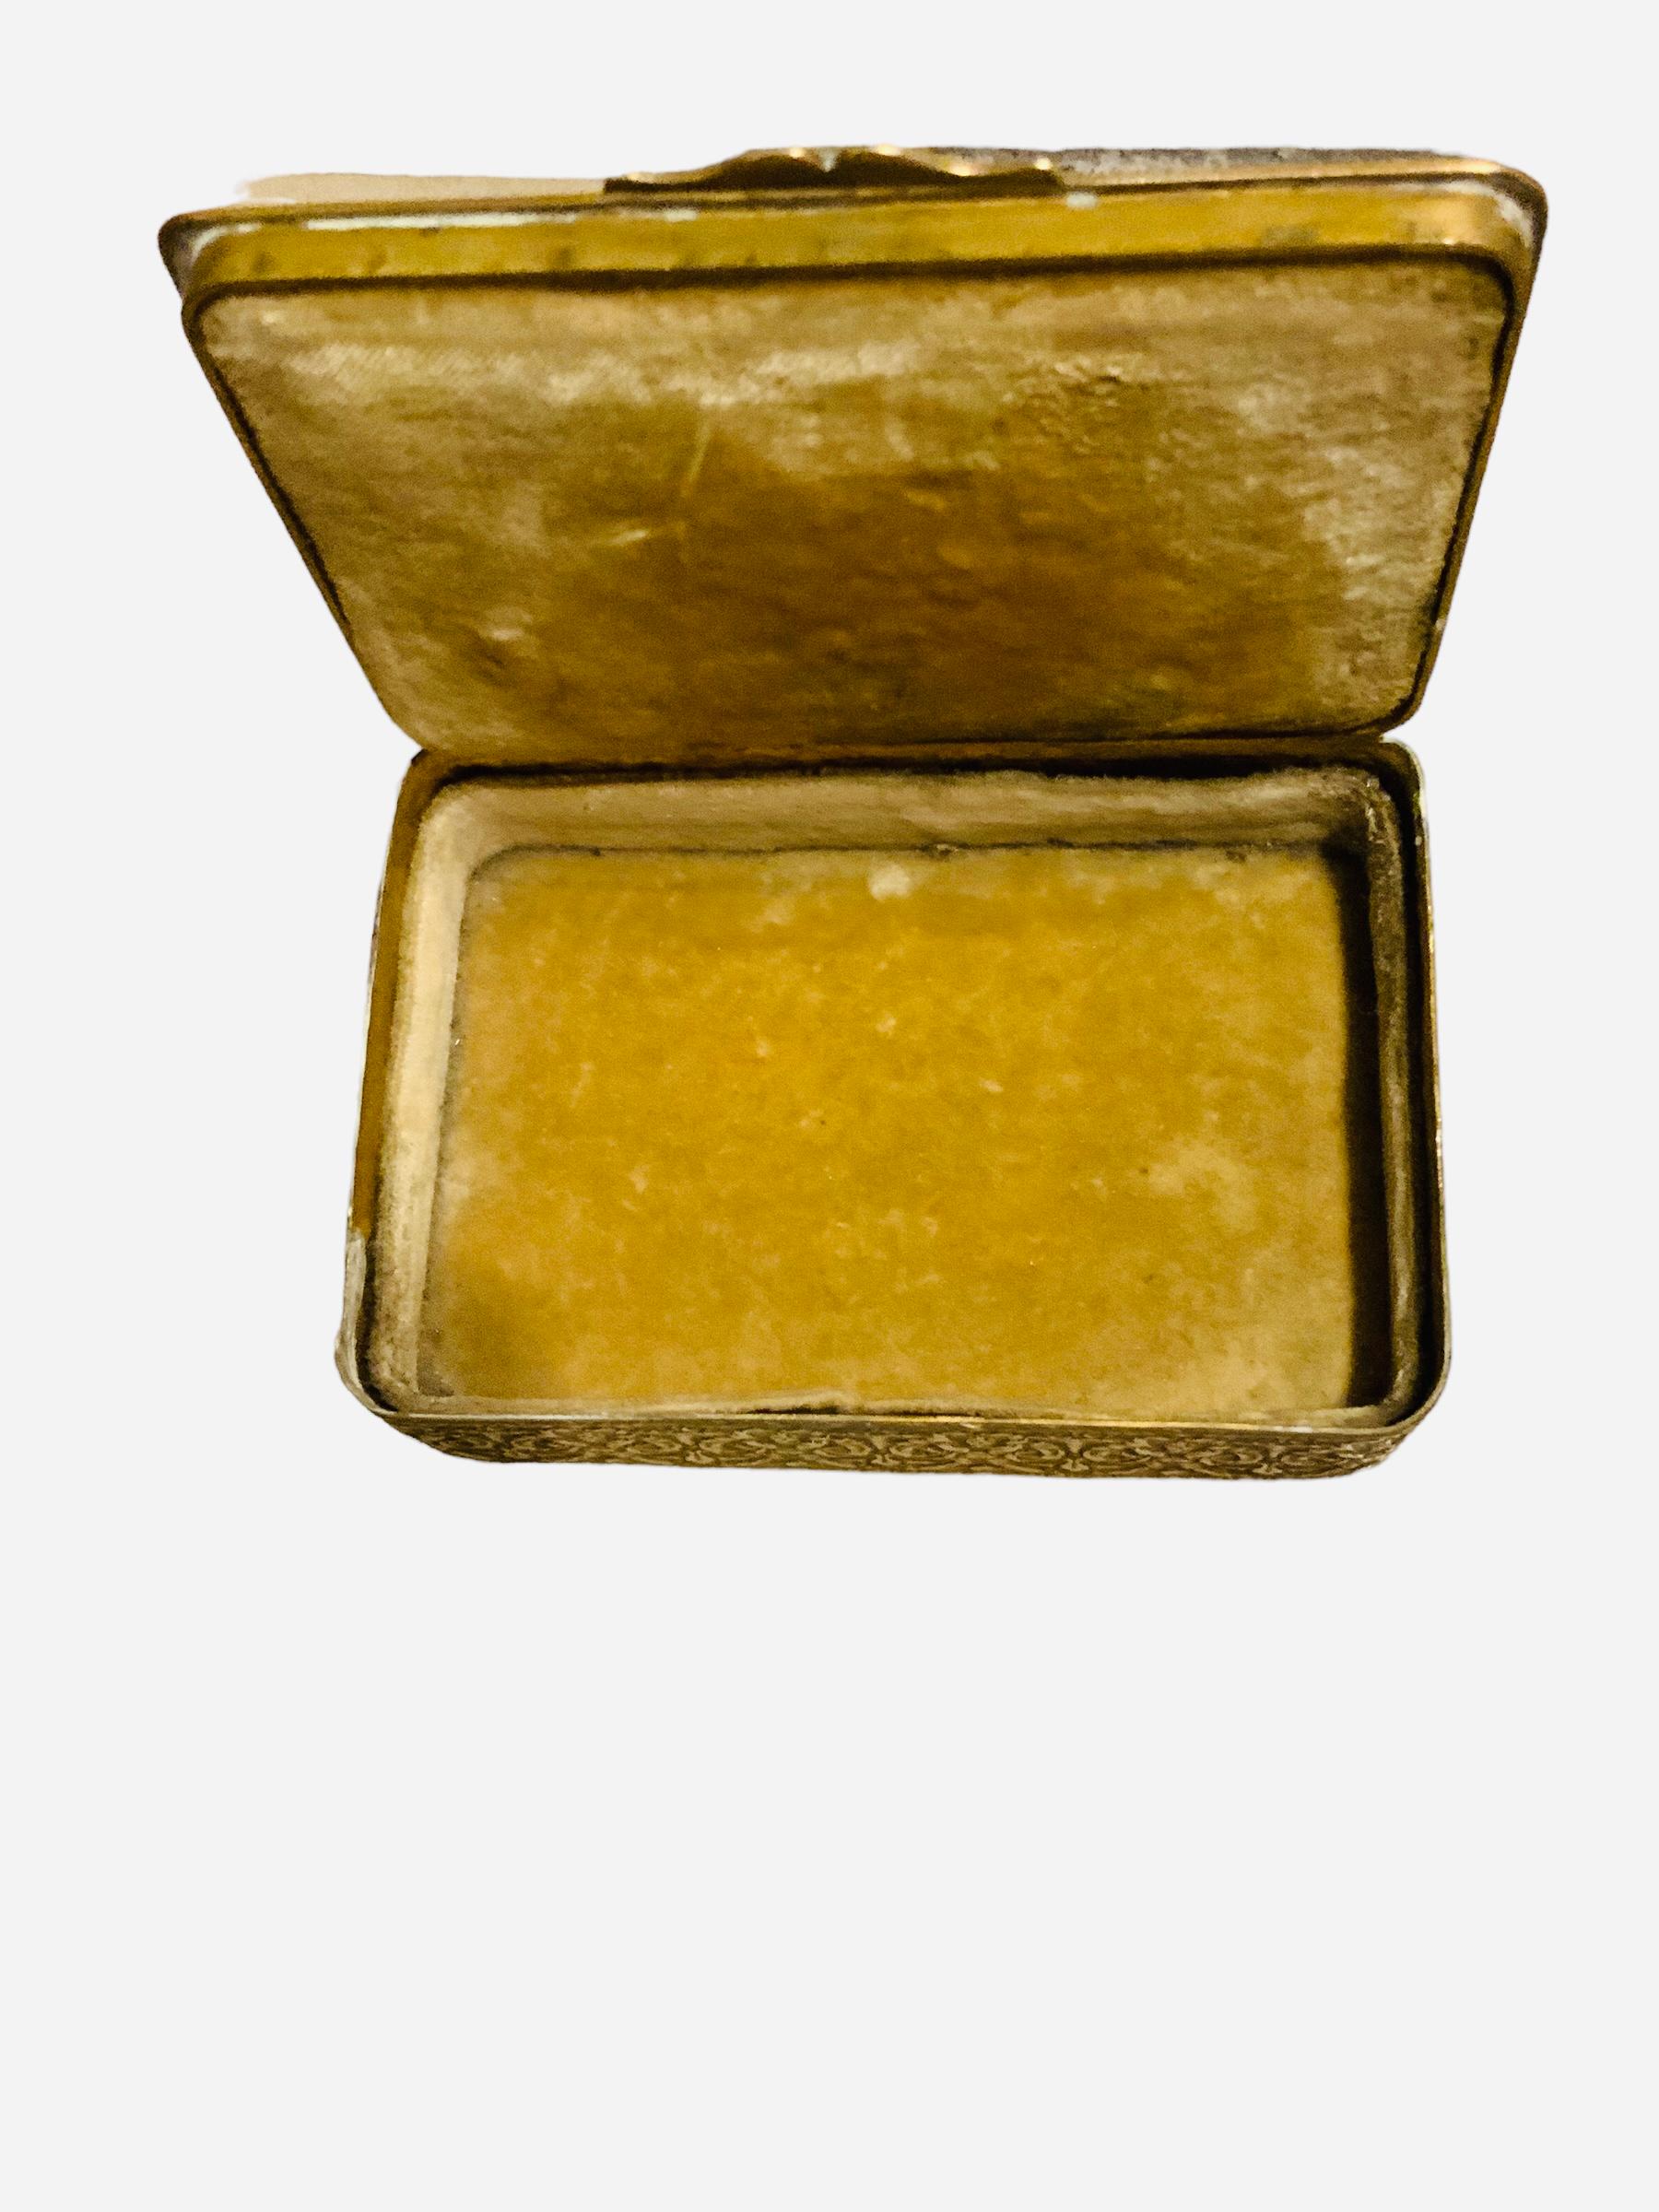 Il s'agit d'une petite boîte à bijoux rectangulaire en bronze italien. Il s'agit d'un couvercle en bronze repoussé, décoré au centre d'un portrait rond du XIXe siècle, peint à la main, d'une dame au chapeau orné de fleurs. Le portrait est signé